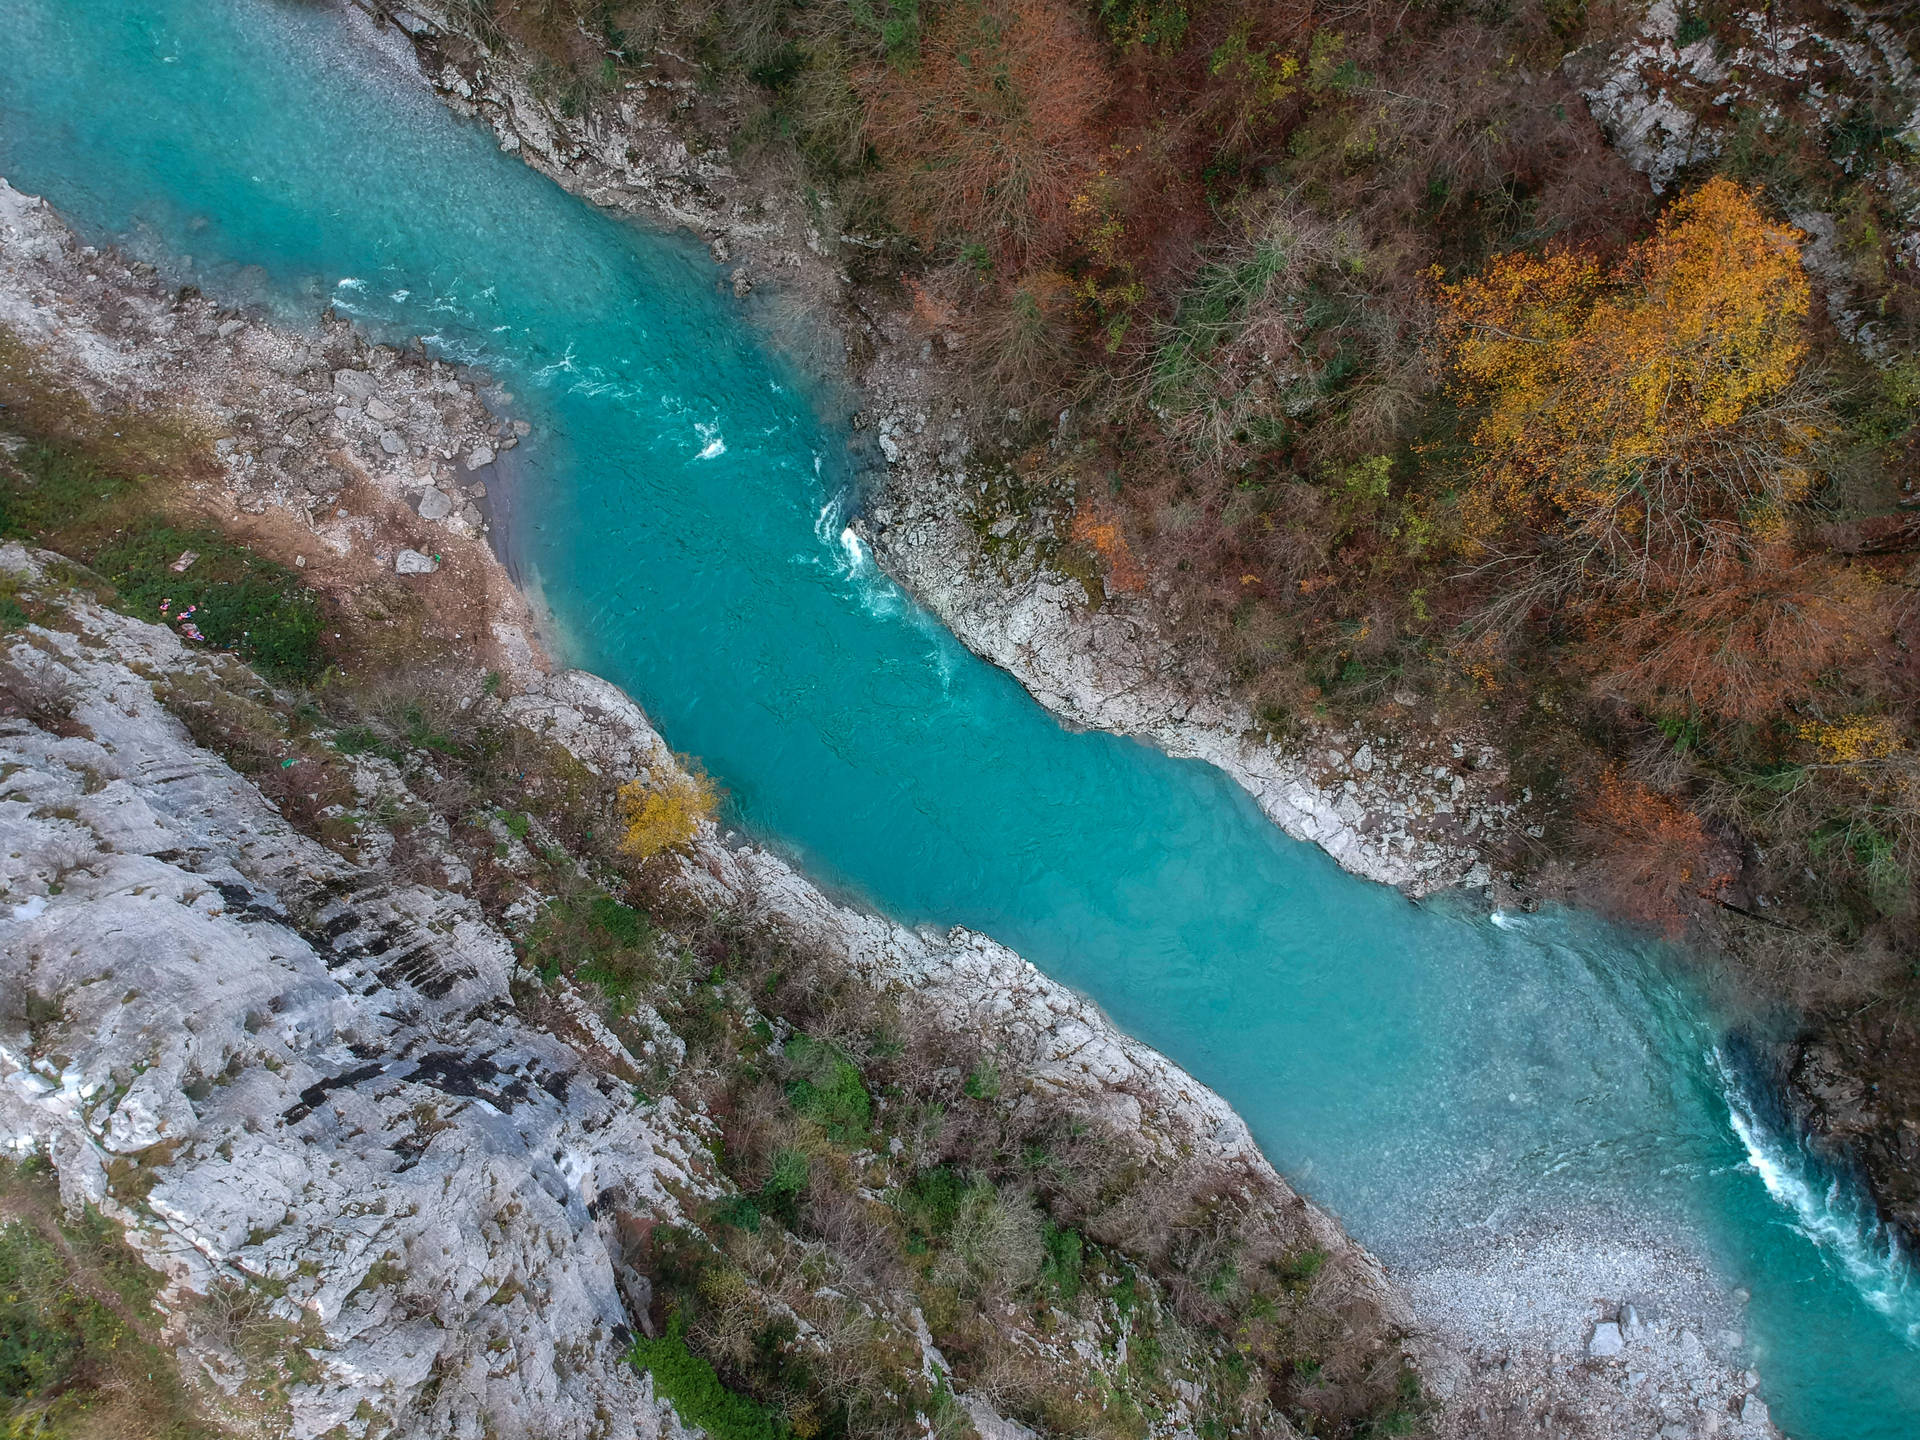 Montenegro Tara River Canyon Background